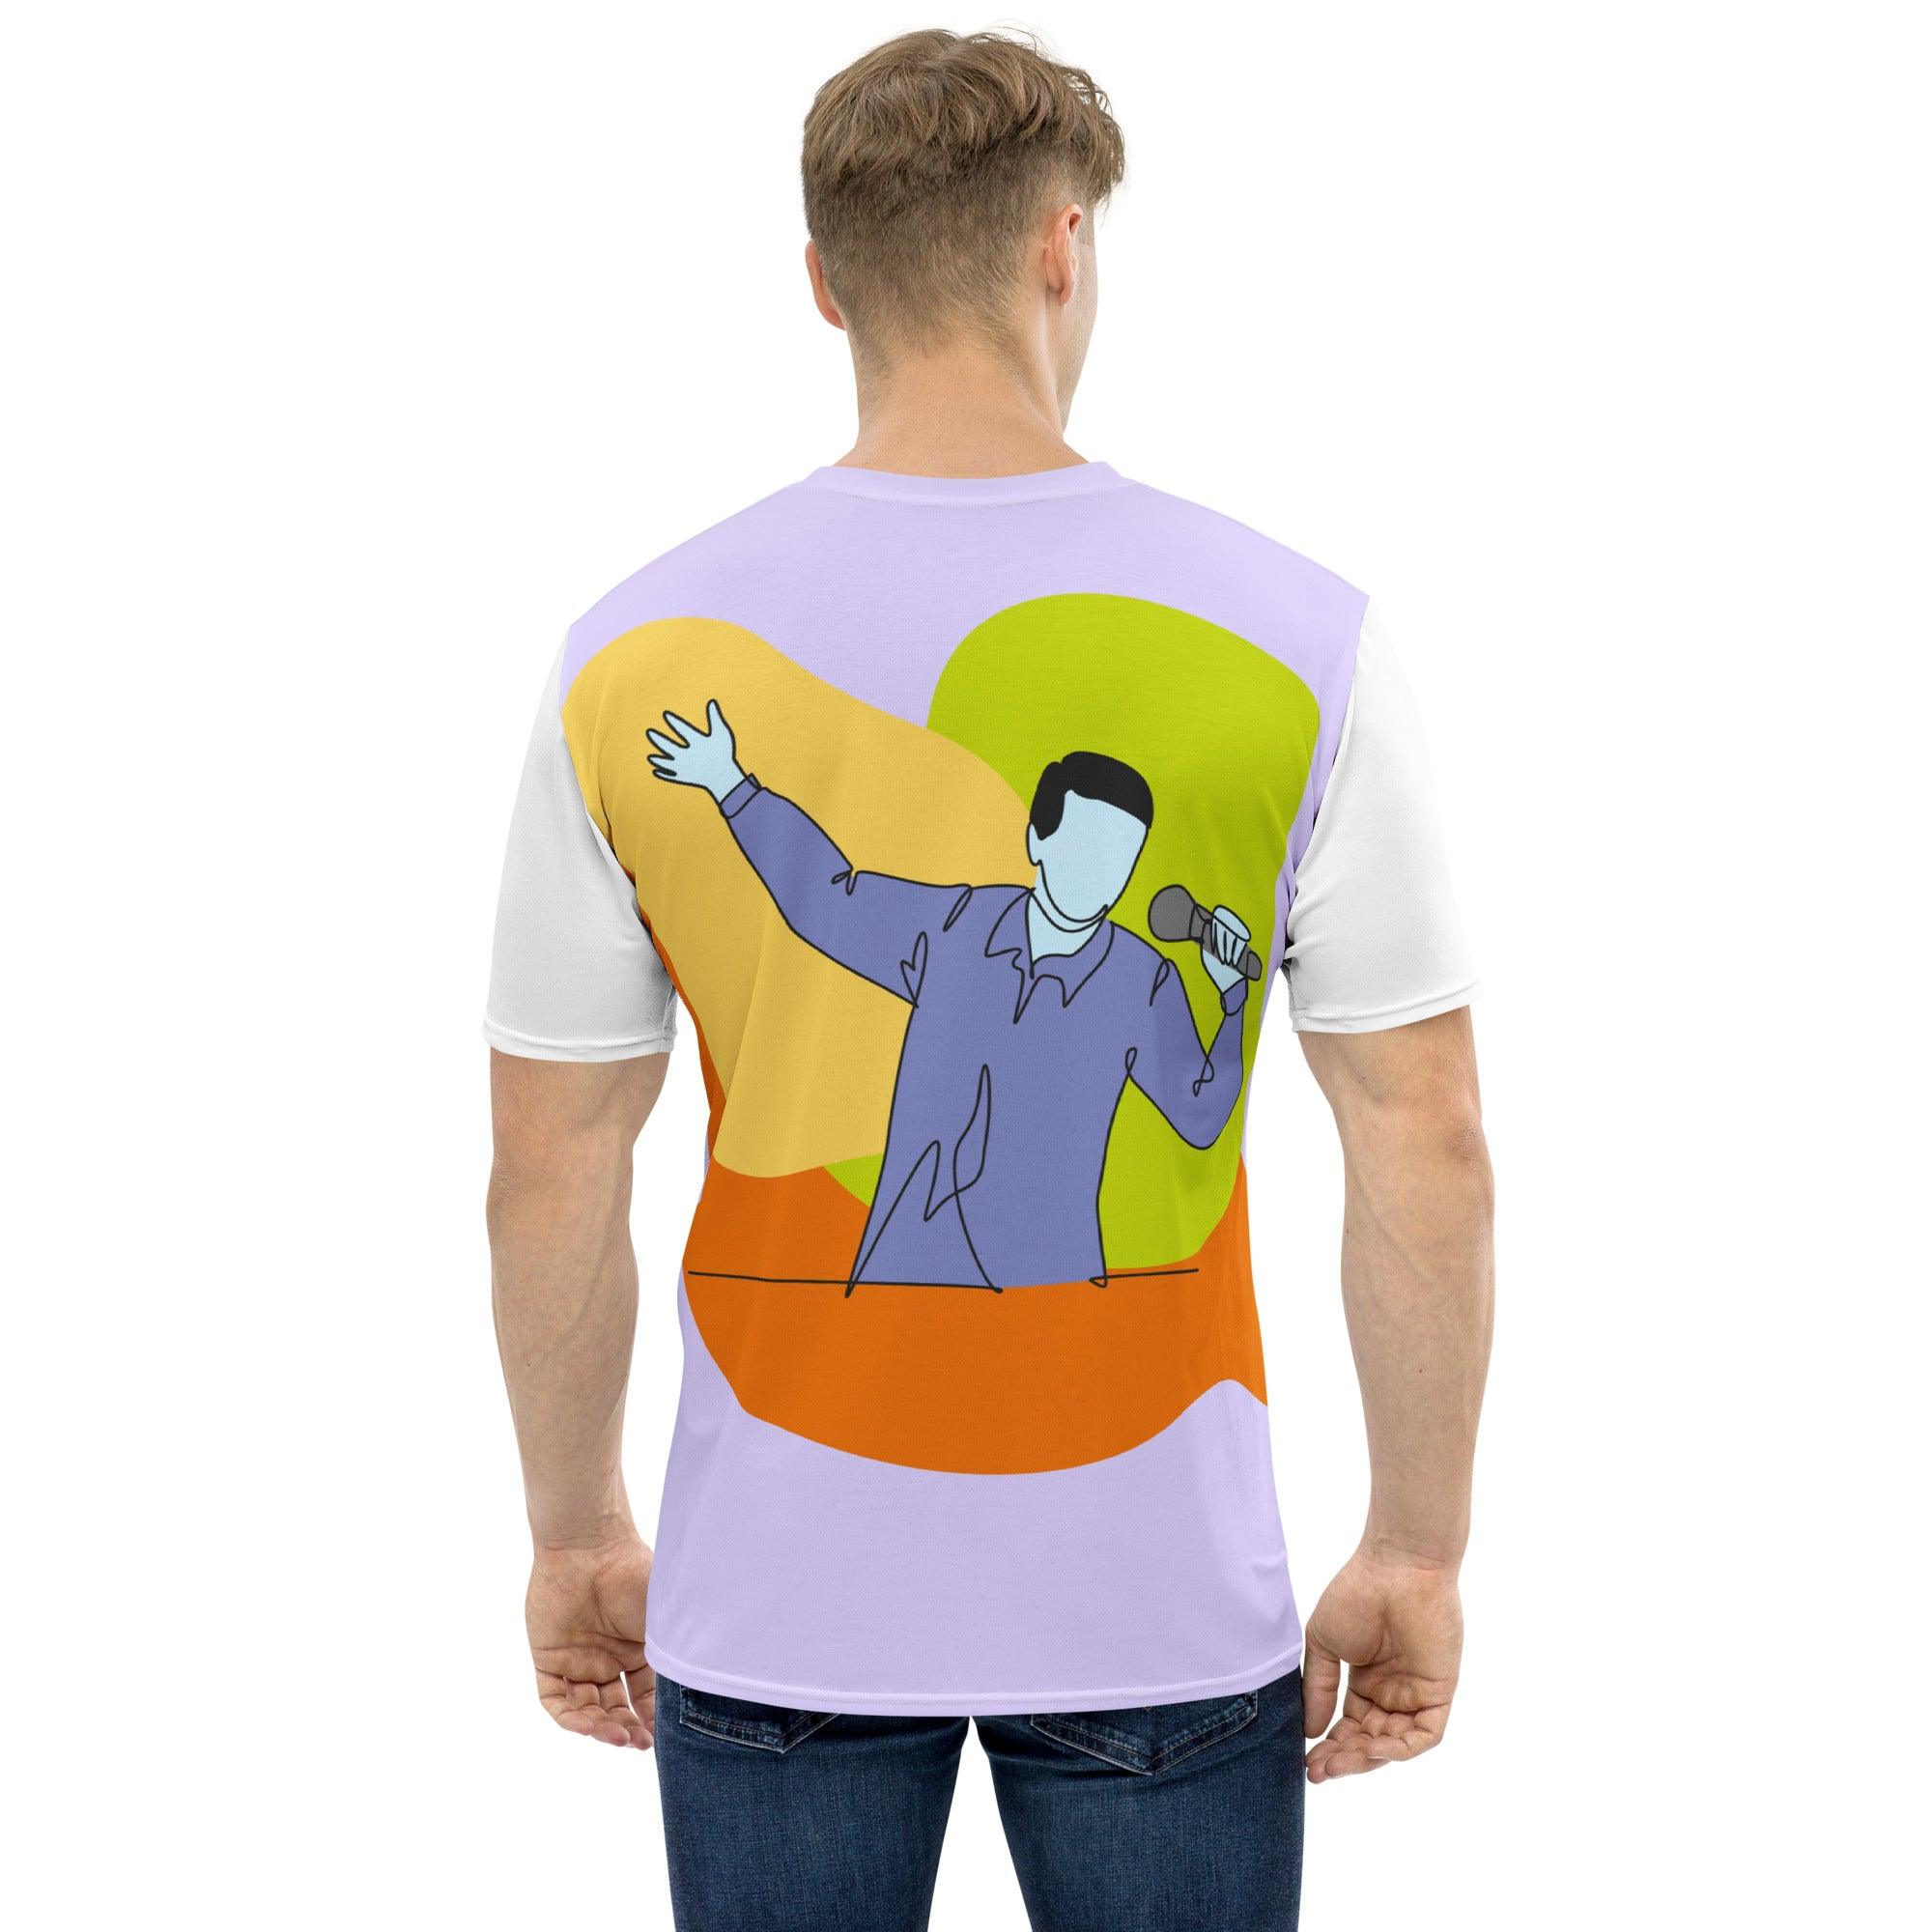 Singing Singing Man Men's T-ShirtMan Men's T-shirt - Beyond T-shirts